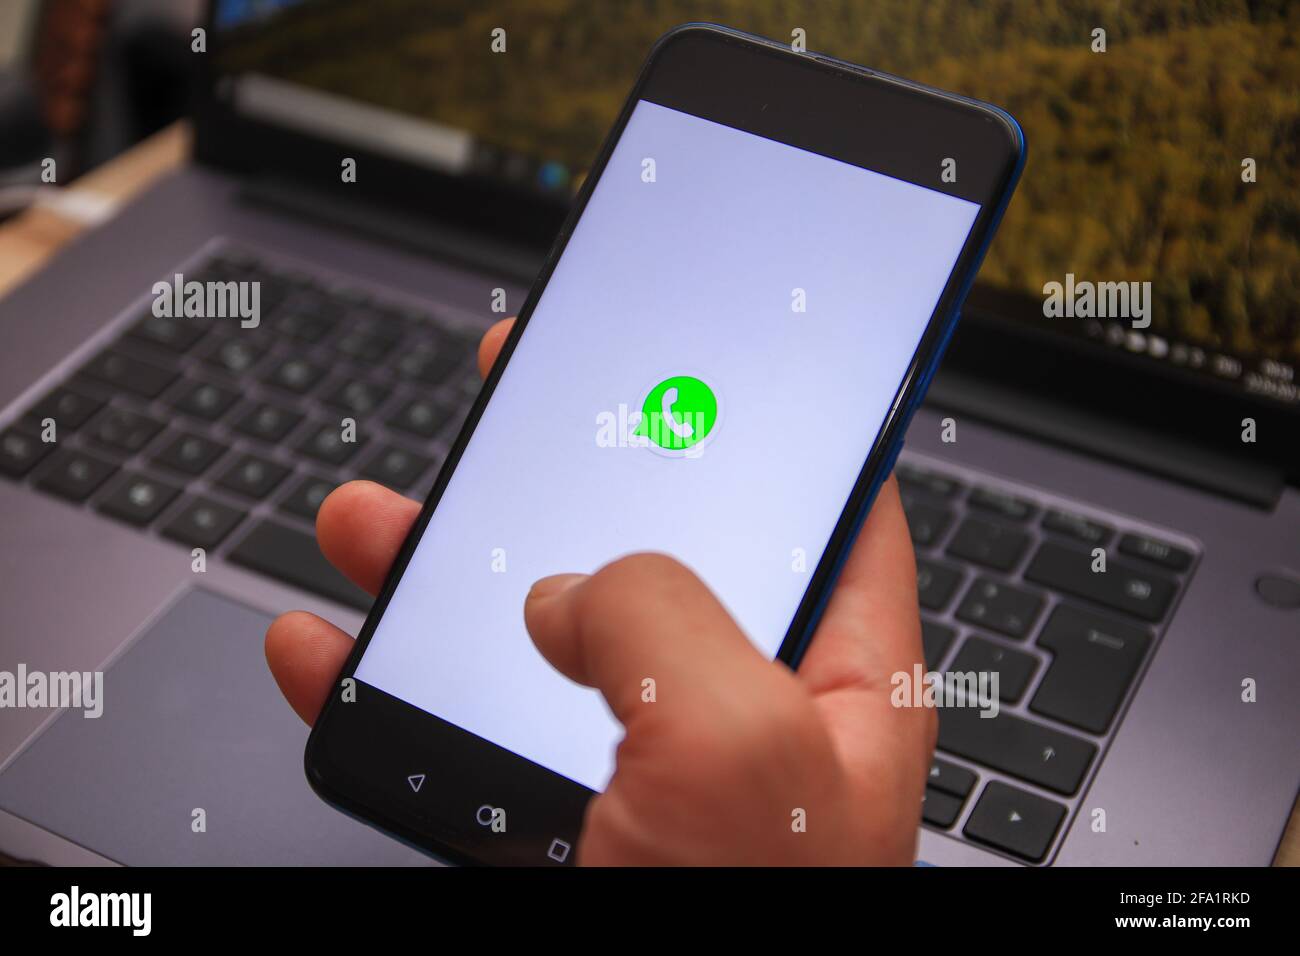 Berlin, Allemagne - 22 avril 2021 : logo WhatsApp affiché sur le smartphone. Avec WhatsApp, vous bénéficiez gratuitement d'une messagerie et d'appels rapides, simples et sécurisés Banque D'Images